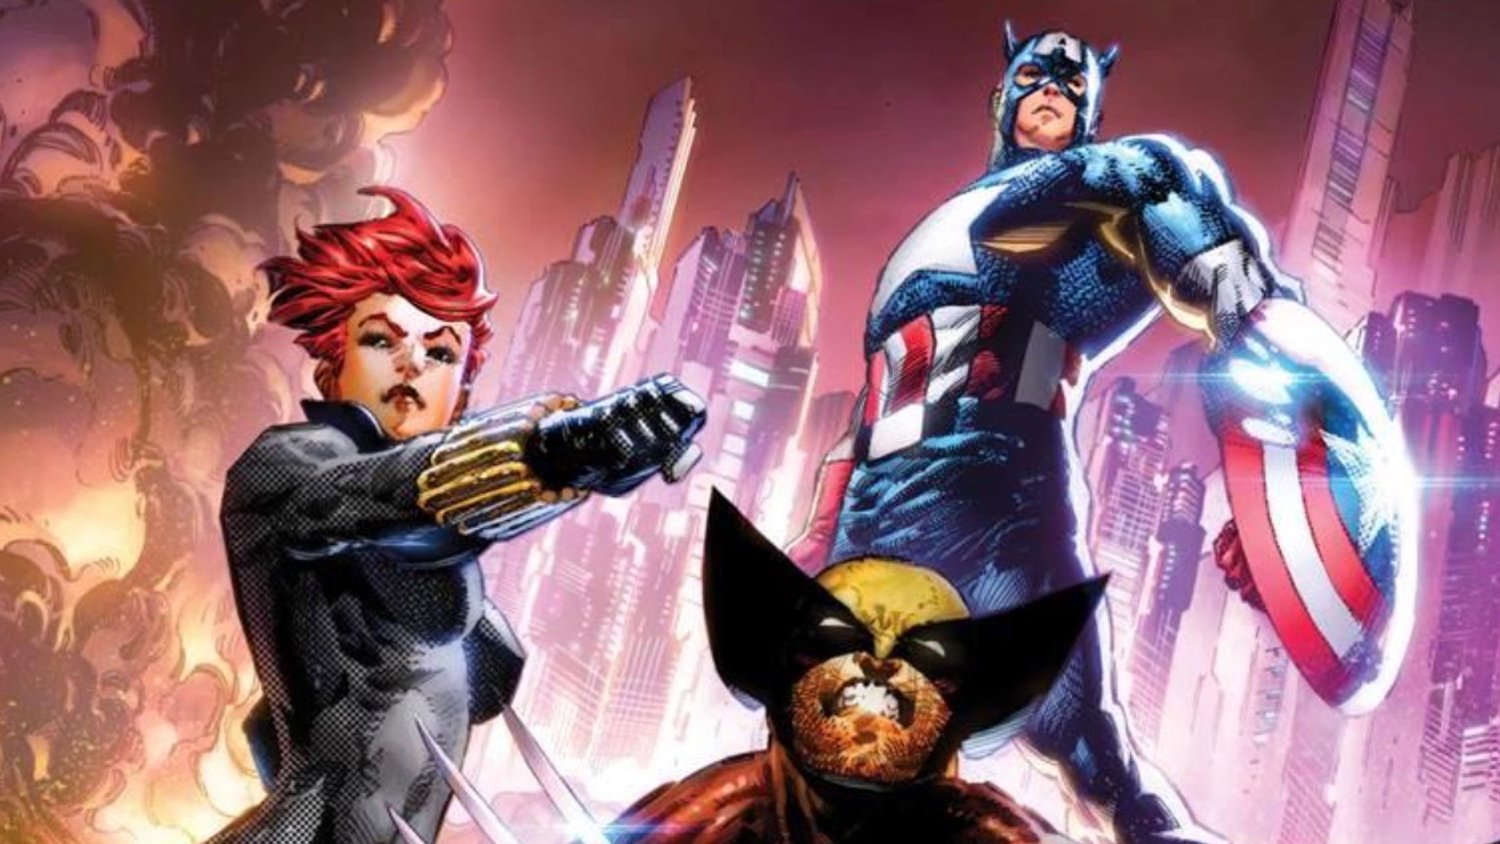 Le scénariste de bandes dessinées X-MEN Chris Claremont revient chez Marvel pour la nouvelle série Wolverine WOLVERINE: MADRIPOOR NIGHTS